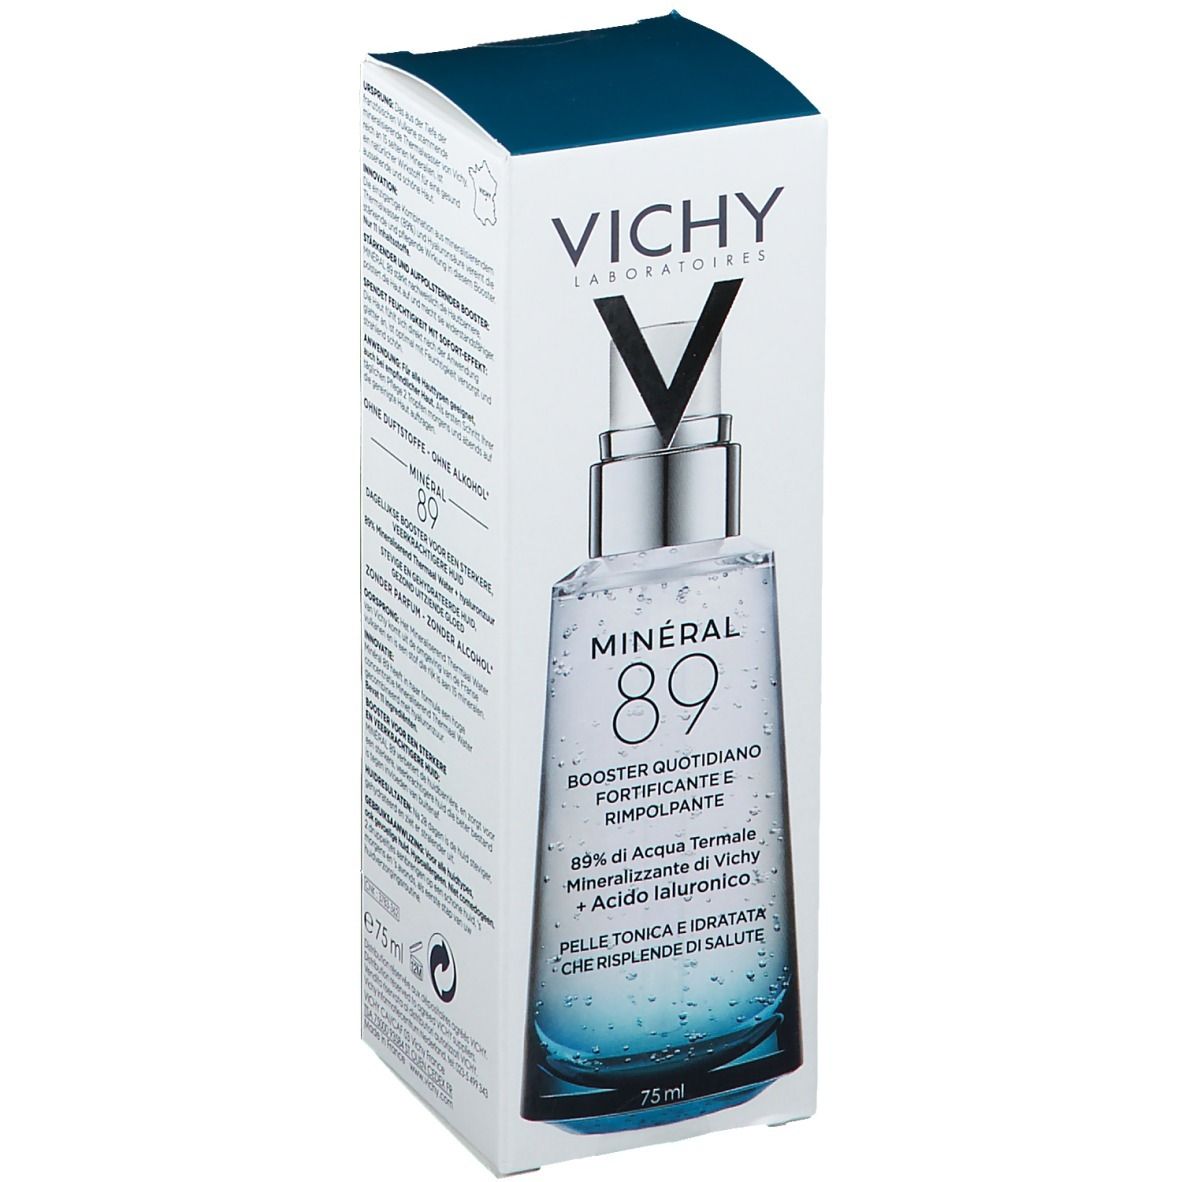 Vichy Täglich stärkende und repulpierende Booster